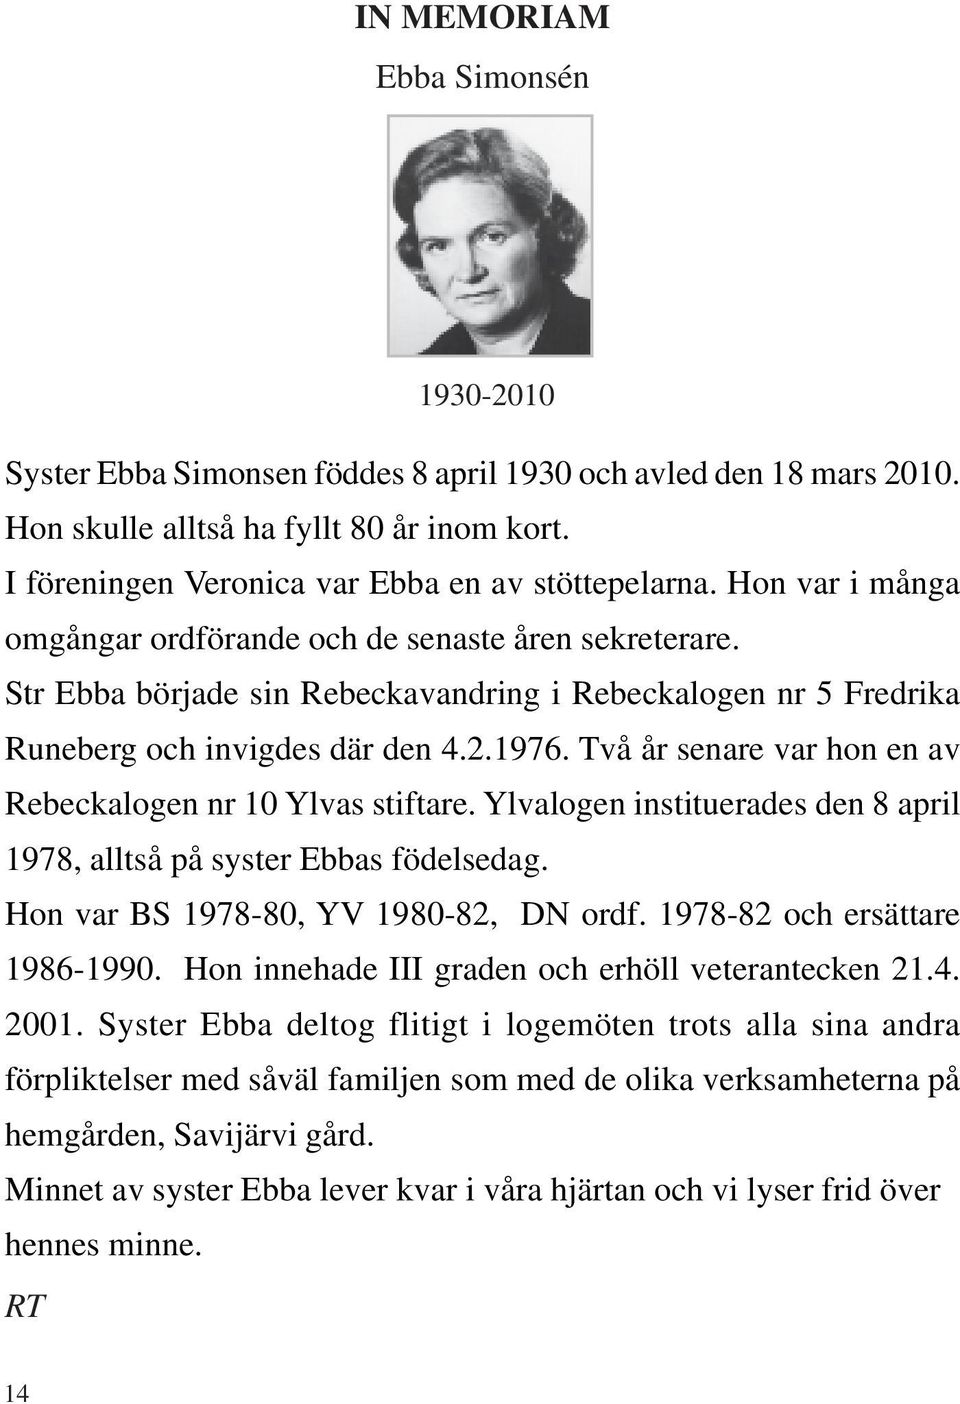 Två år senare var hon en av Rebeckalogen nr 10 Ylvas stiftare. Ylvalogen instituerades den 8 april 1978, alltså på syster Ebbas födelsedag. Hon var BS 1978-80, YV 1980-82, DN ordf.